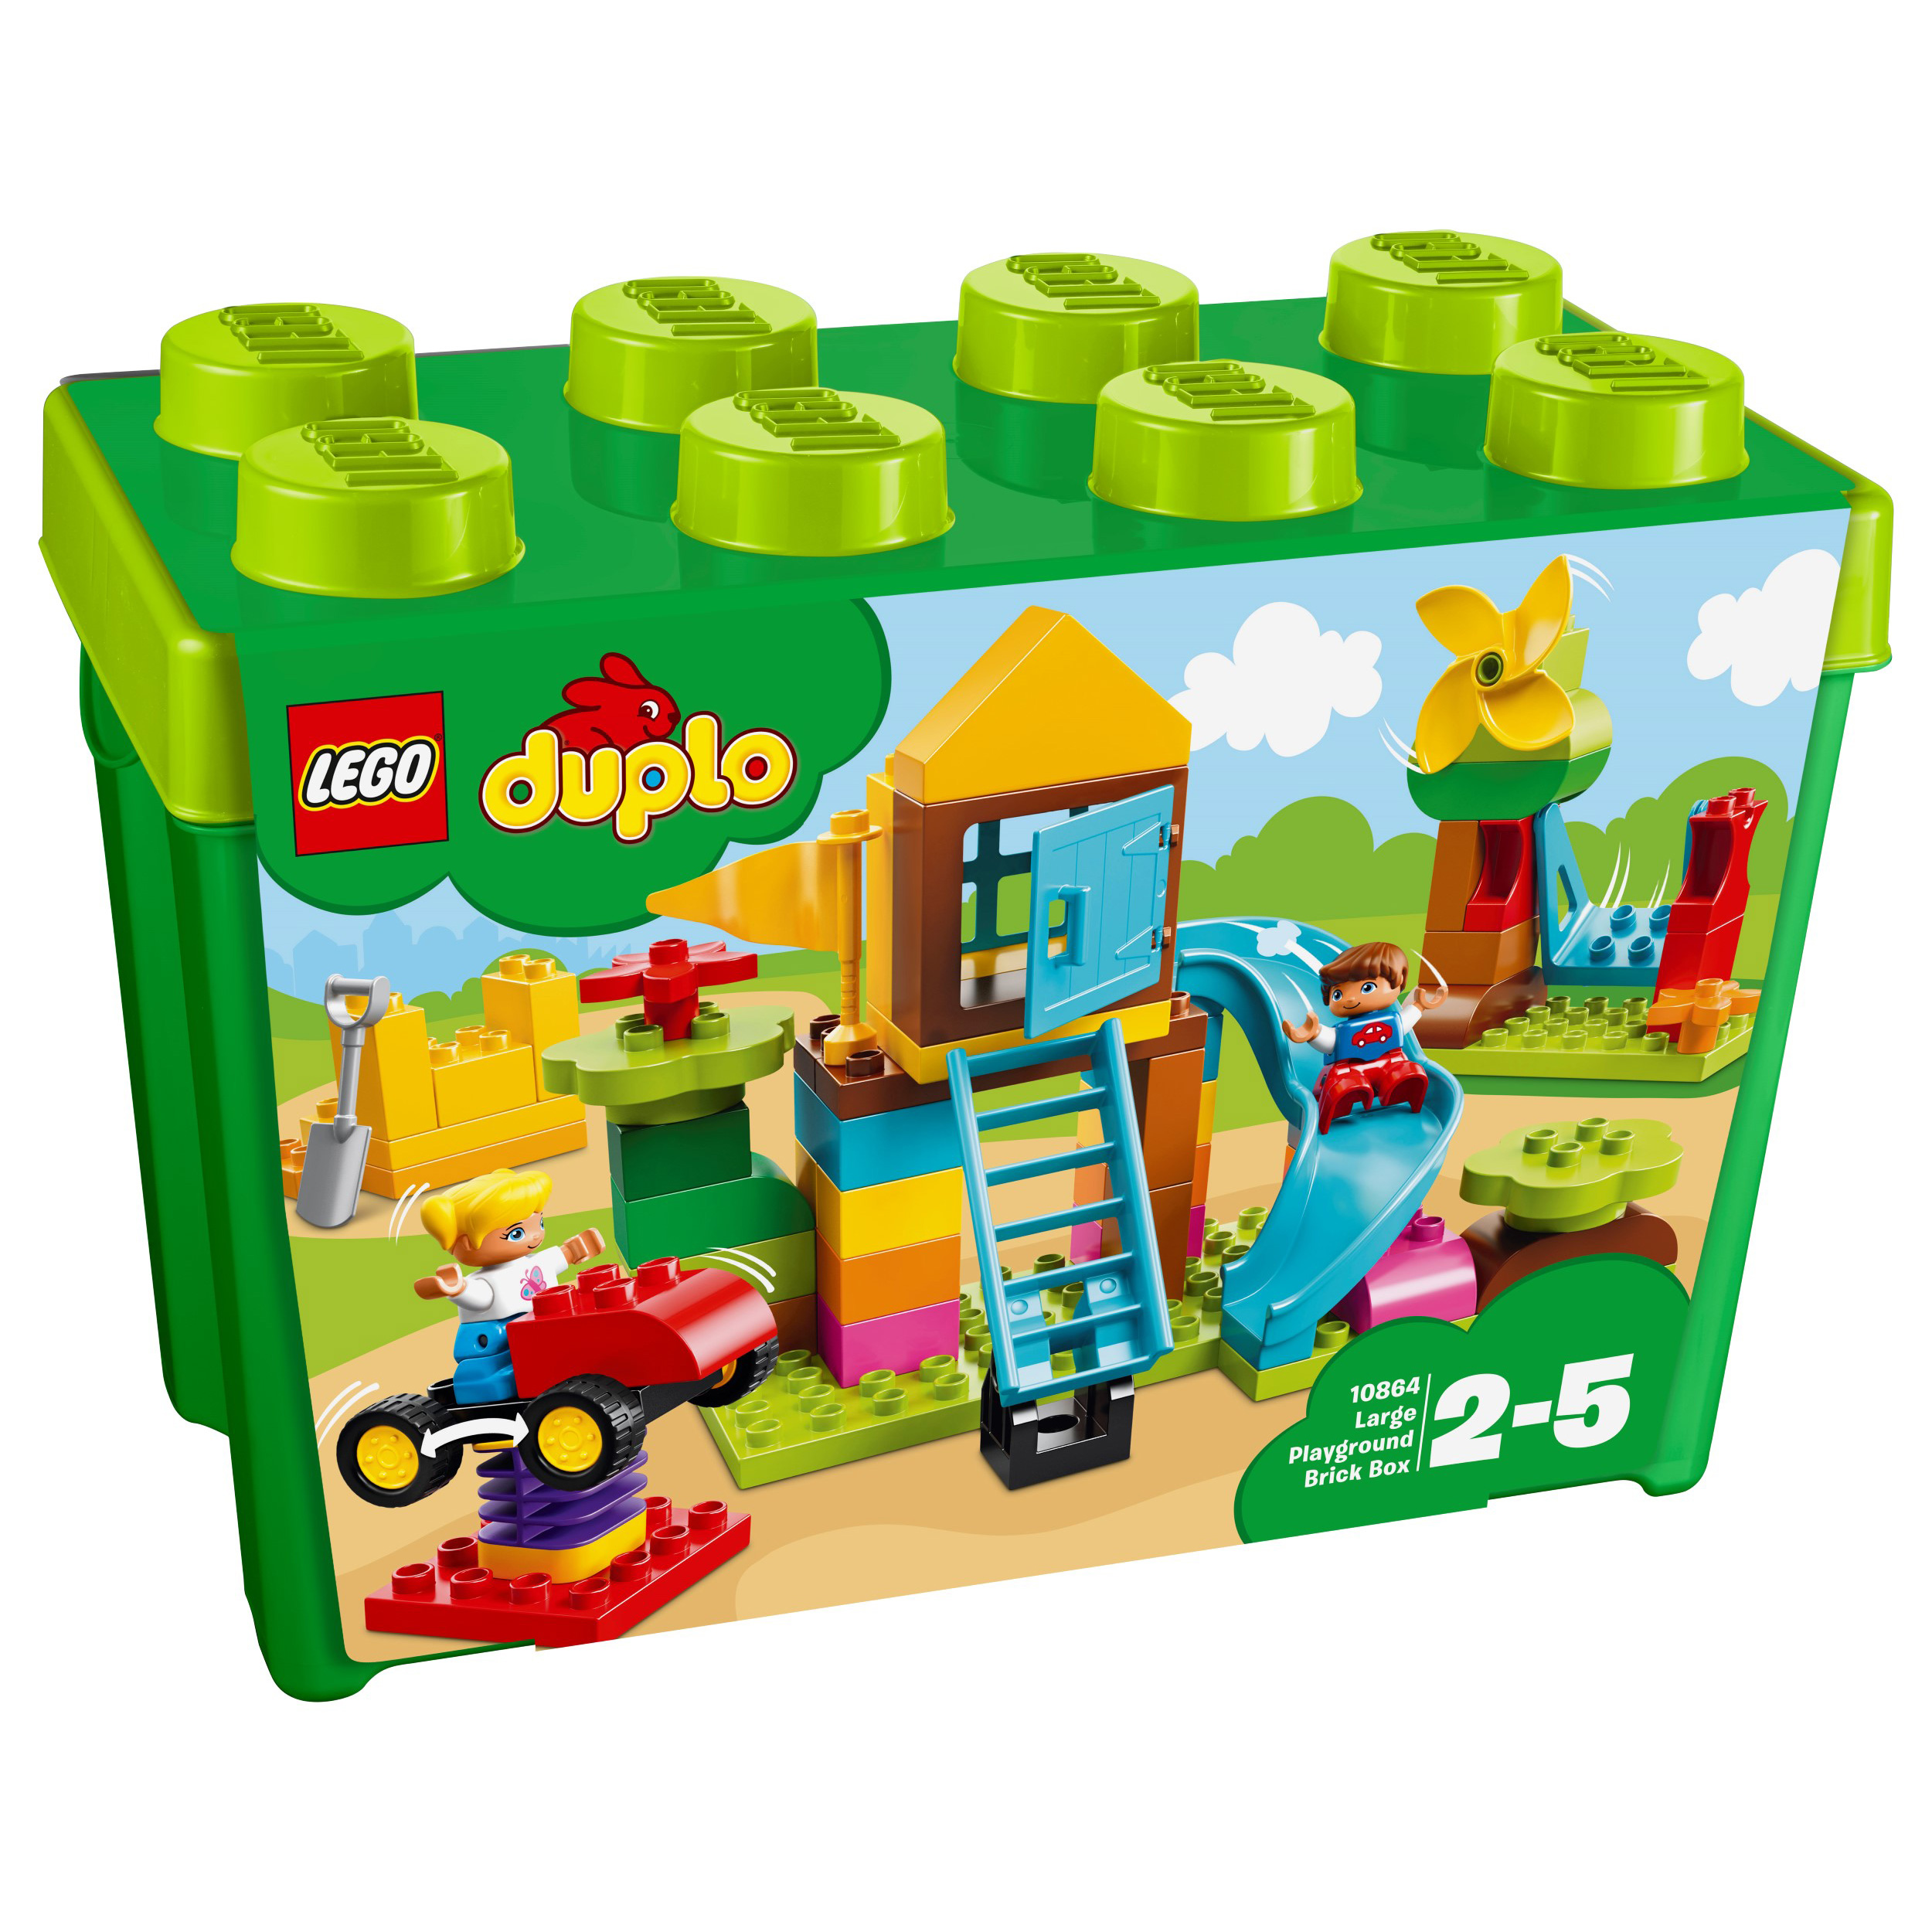 LEGO® DUPLO® 10864 Steinebox mit großem Spielplatz günstig kaufen ...